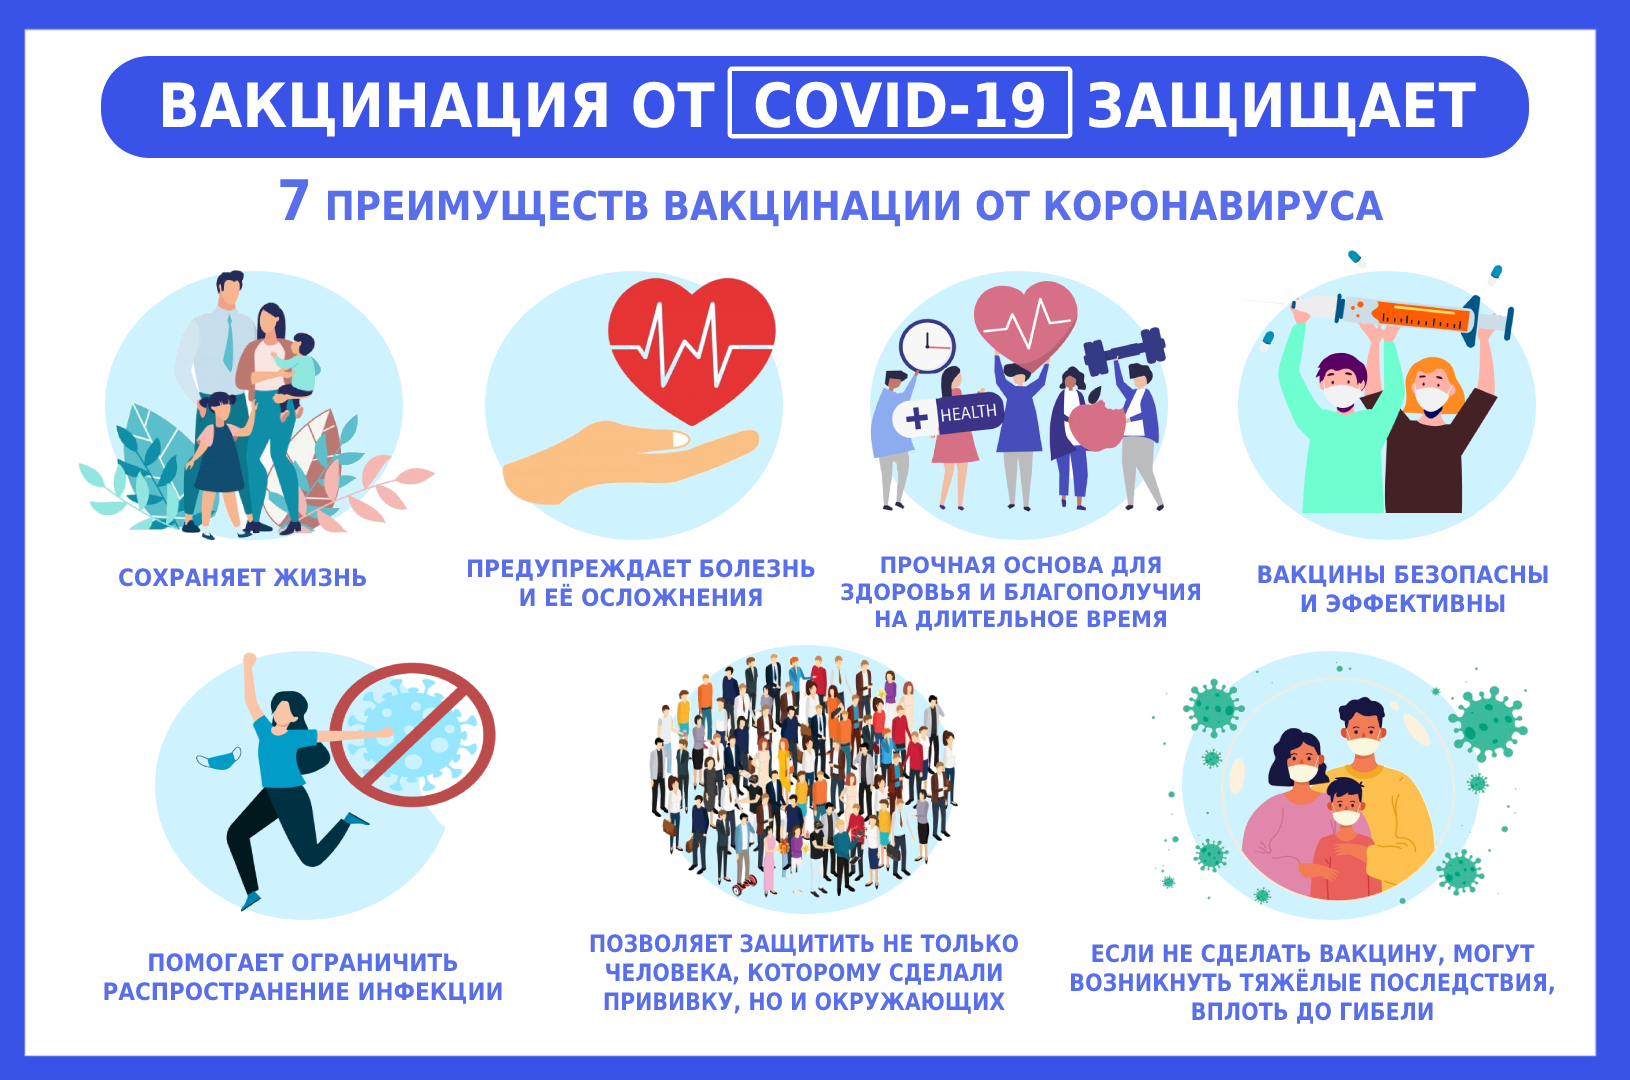 О необходимости и эффективности иммунизации против новой коронавирусной инфекции (COVID-19).